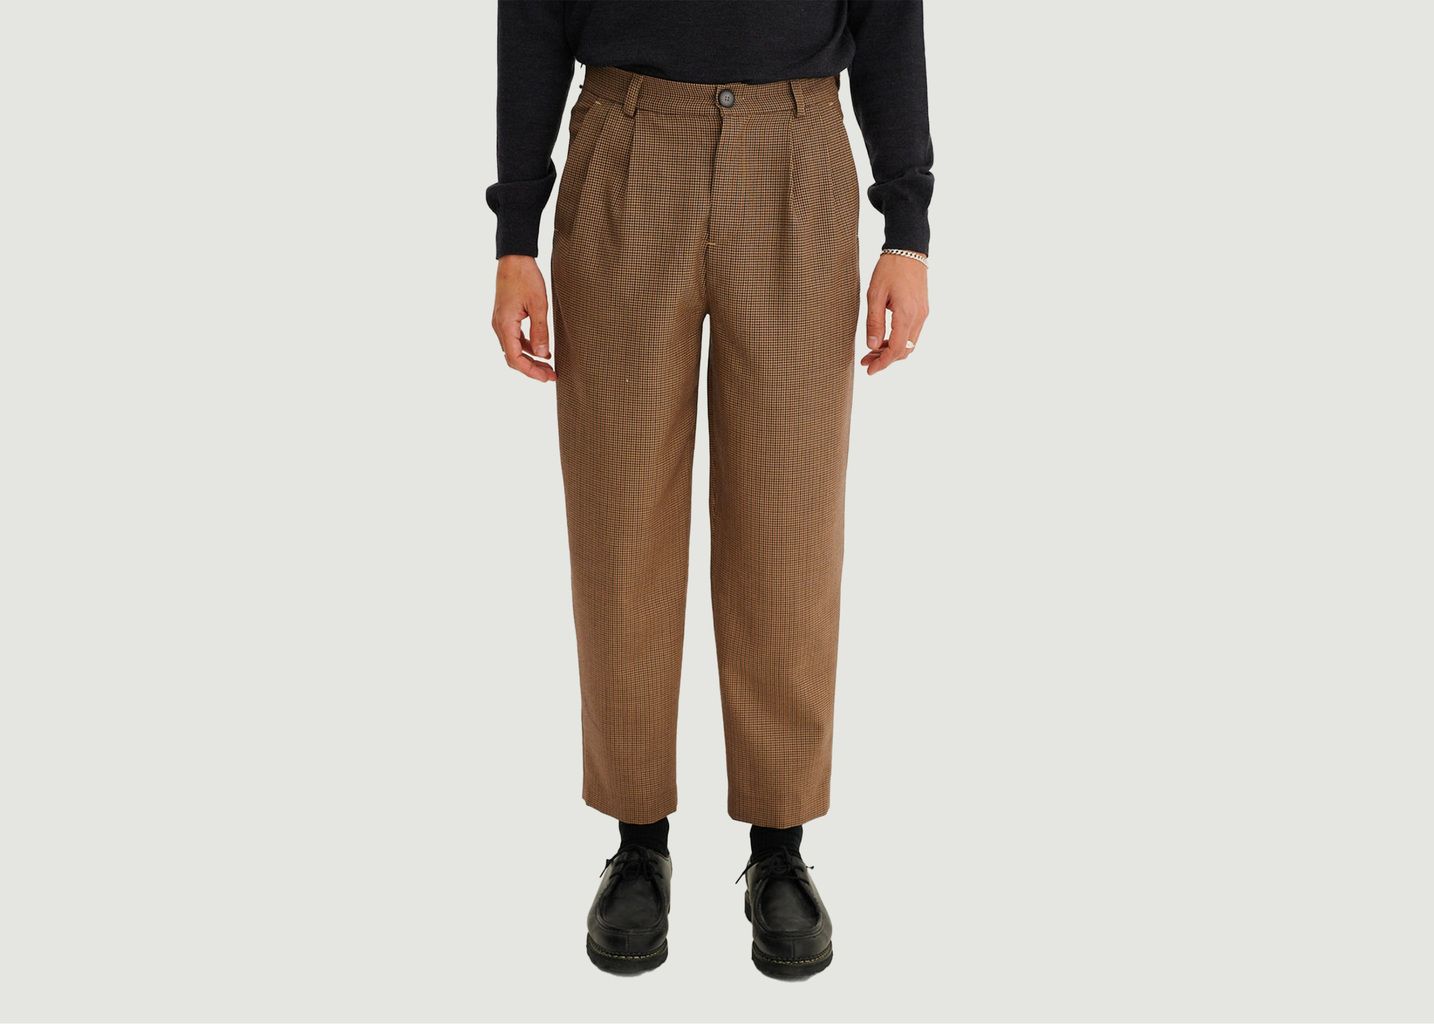 Pantalon Cambridge  - noyoco